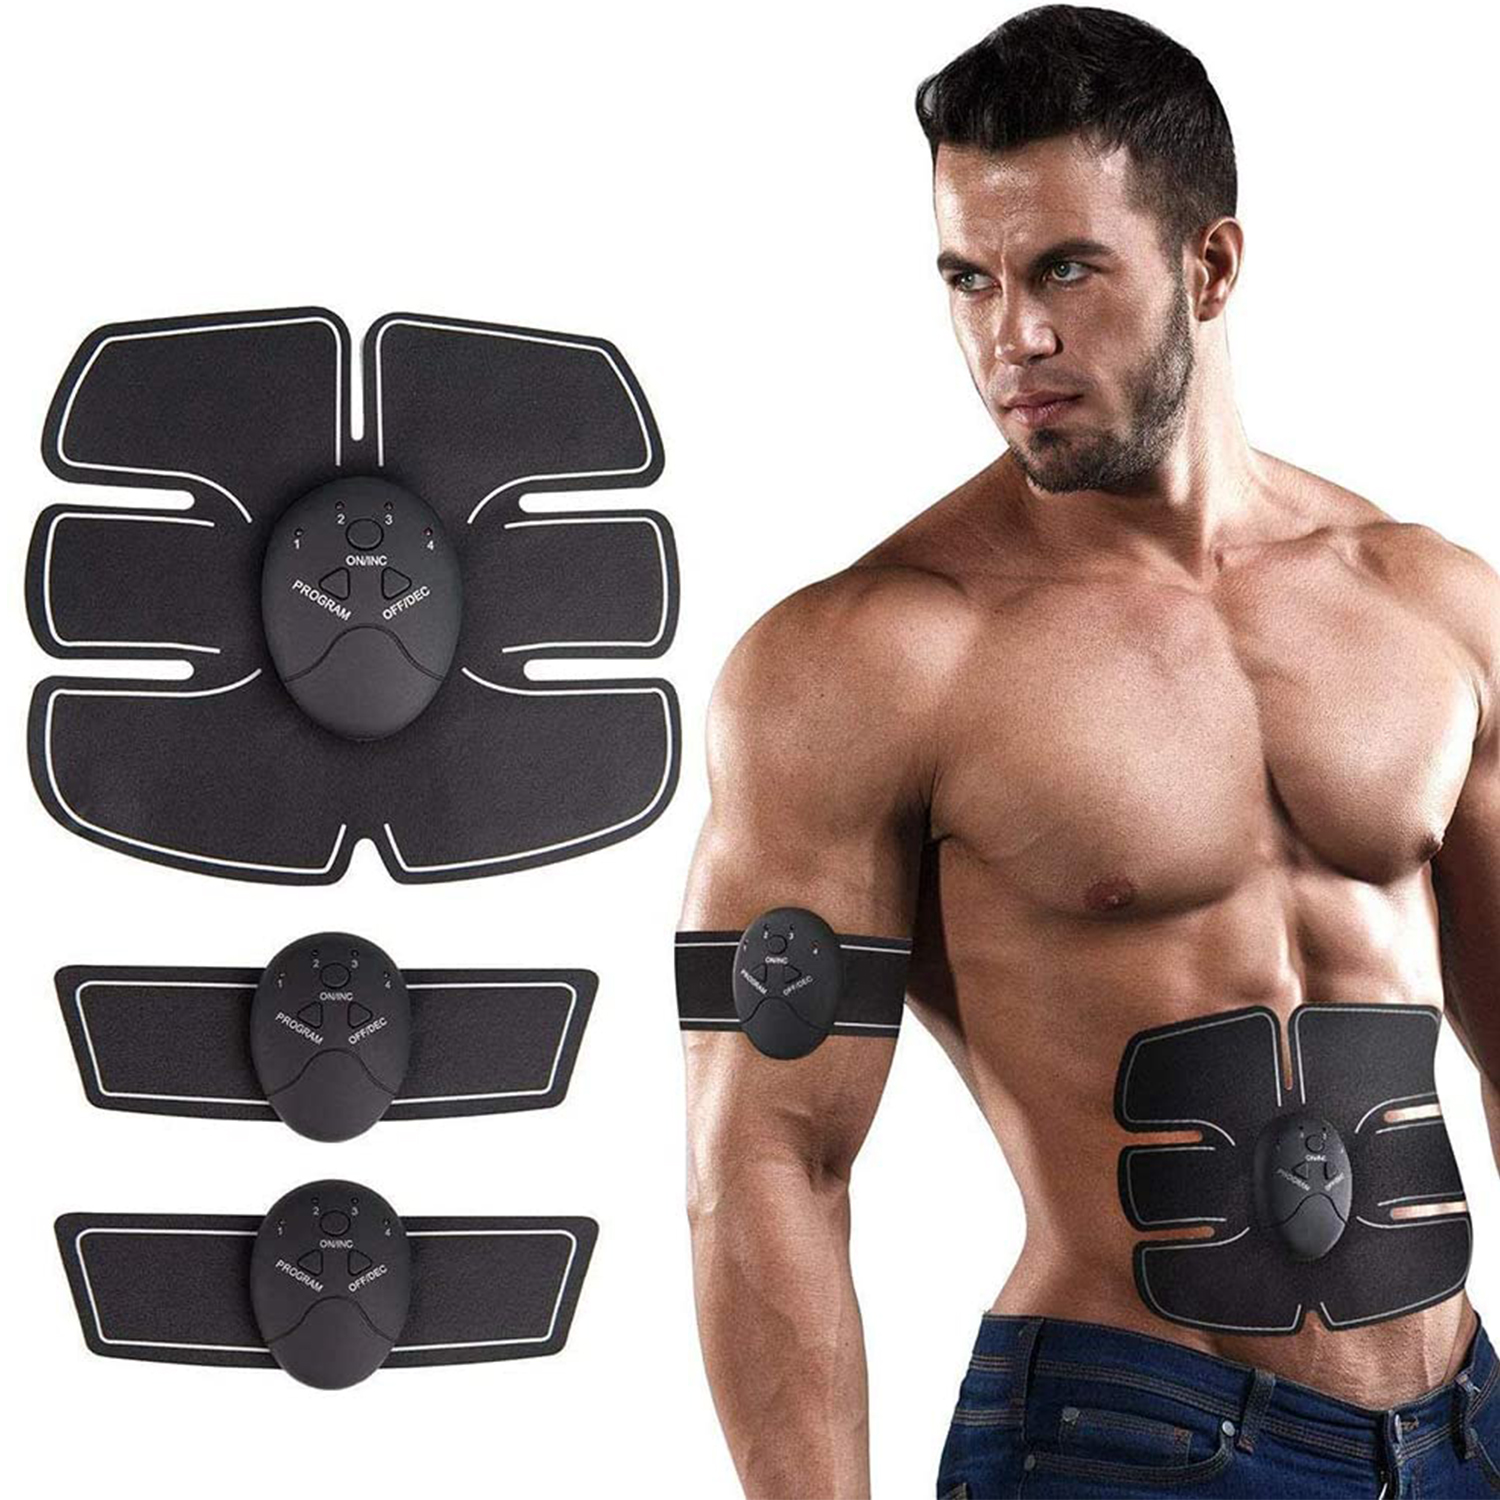 Electro estimulador Muscular - tonifica abdominales brazos Fitness Otros